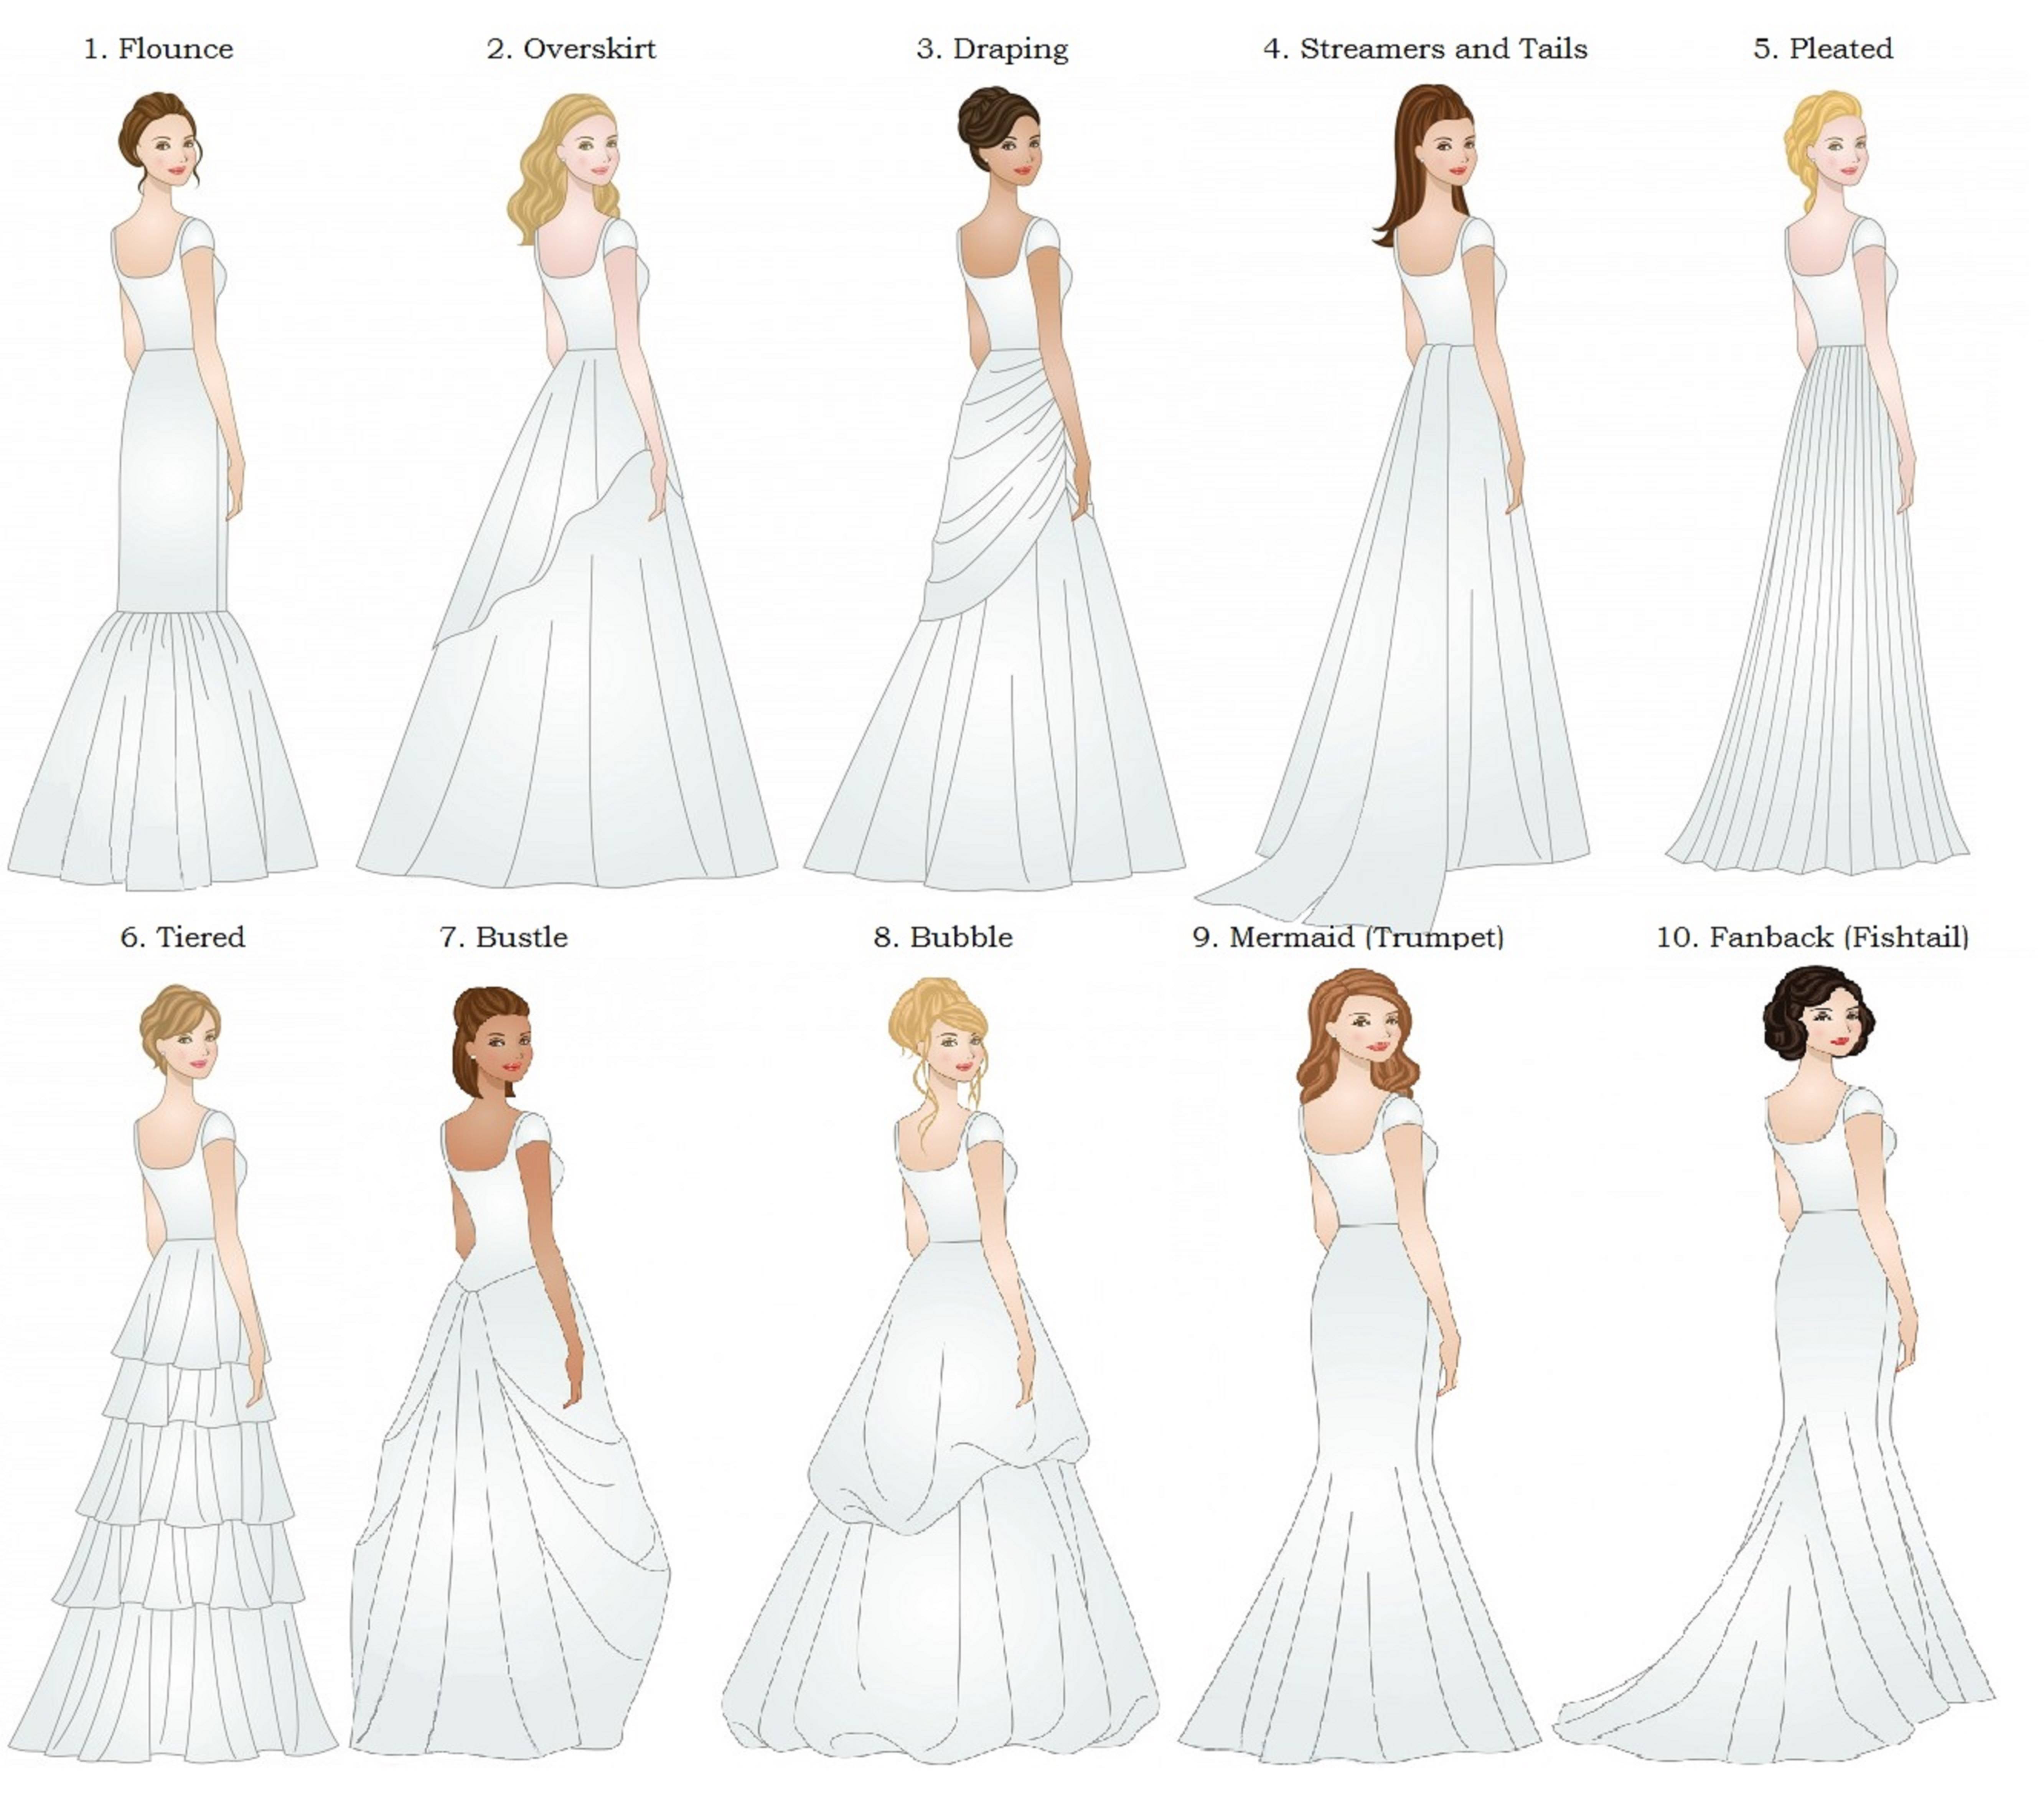 Как выбрать свадебное платье: важен цвет, форма и стиль платья.